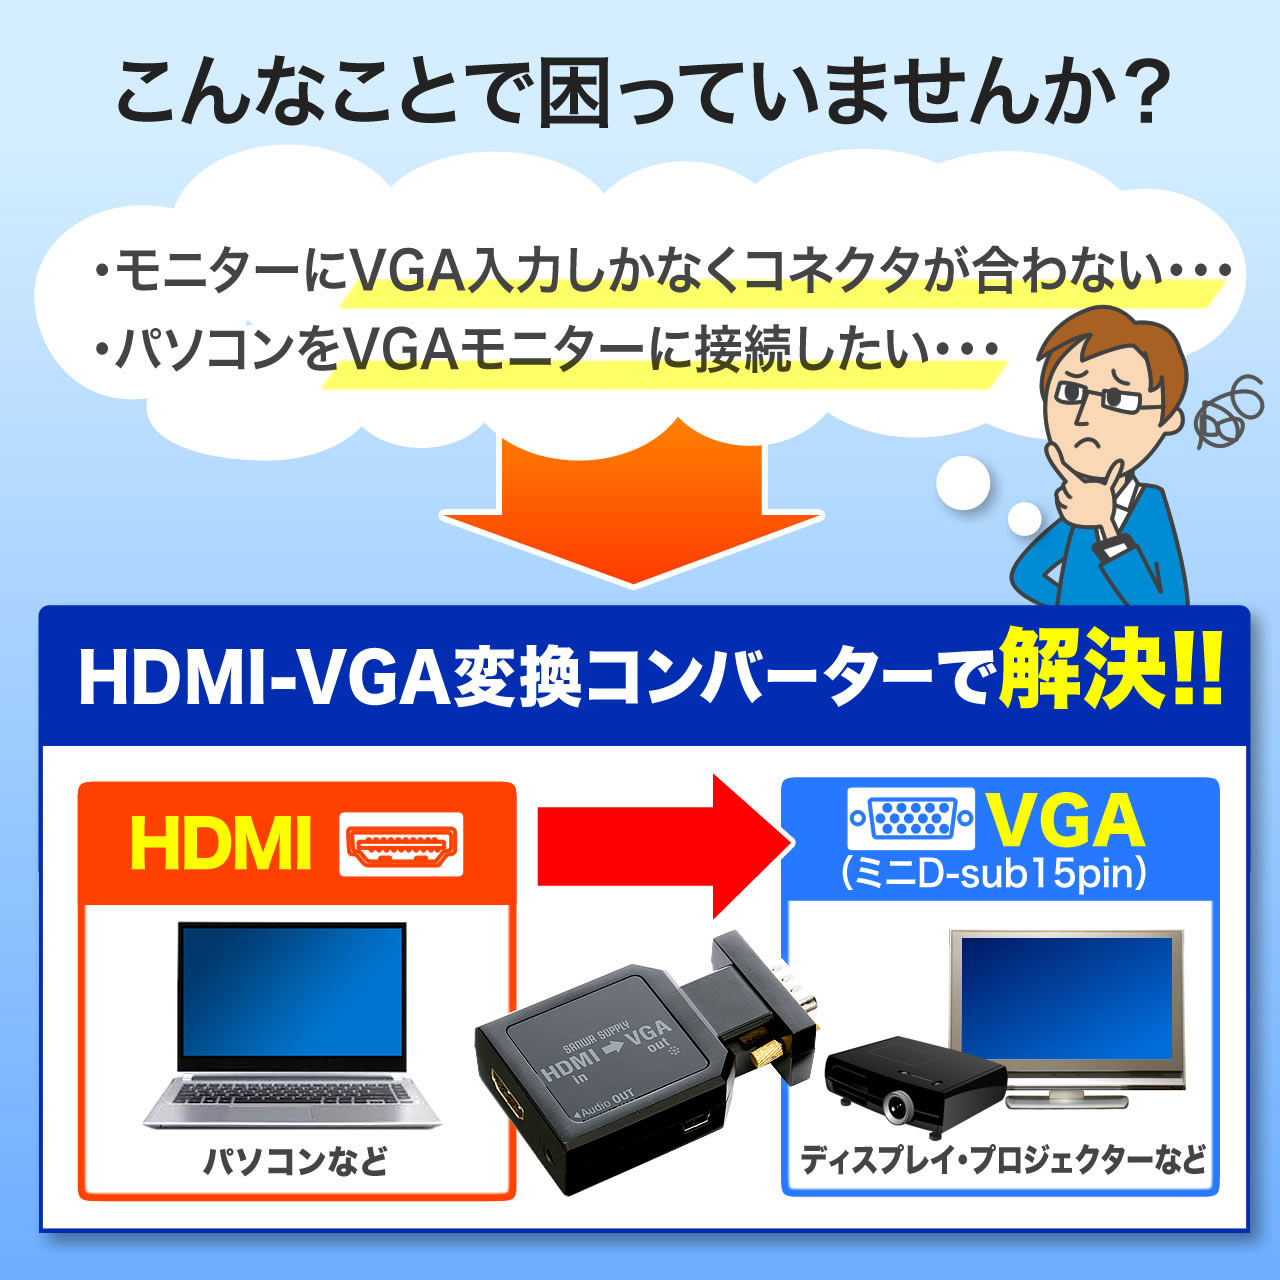 AEgbgFHDMI-VGAϊA_v^iHDMIE~jD-sub15sϊEo͑ΉEXeI~jP[utj Z400-VGA007